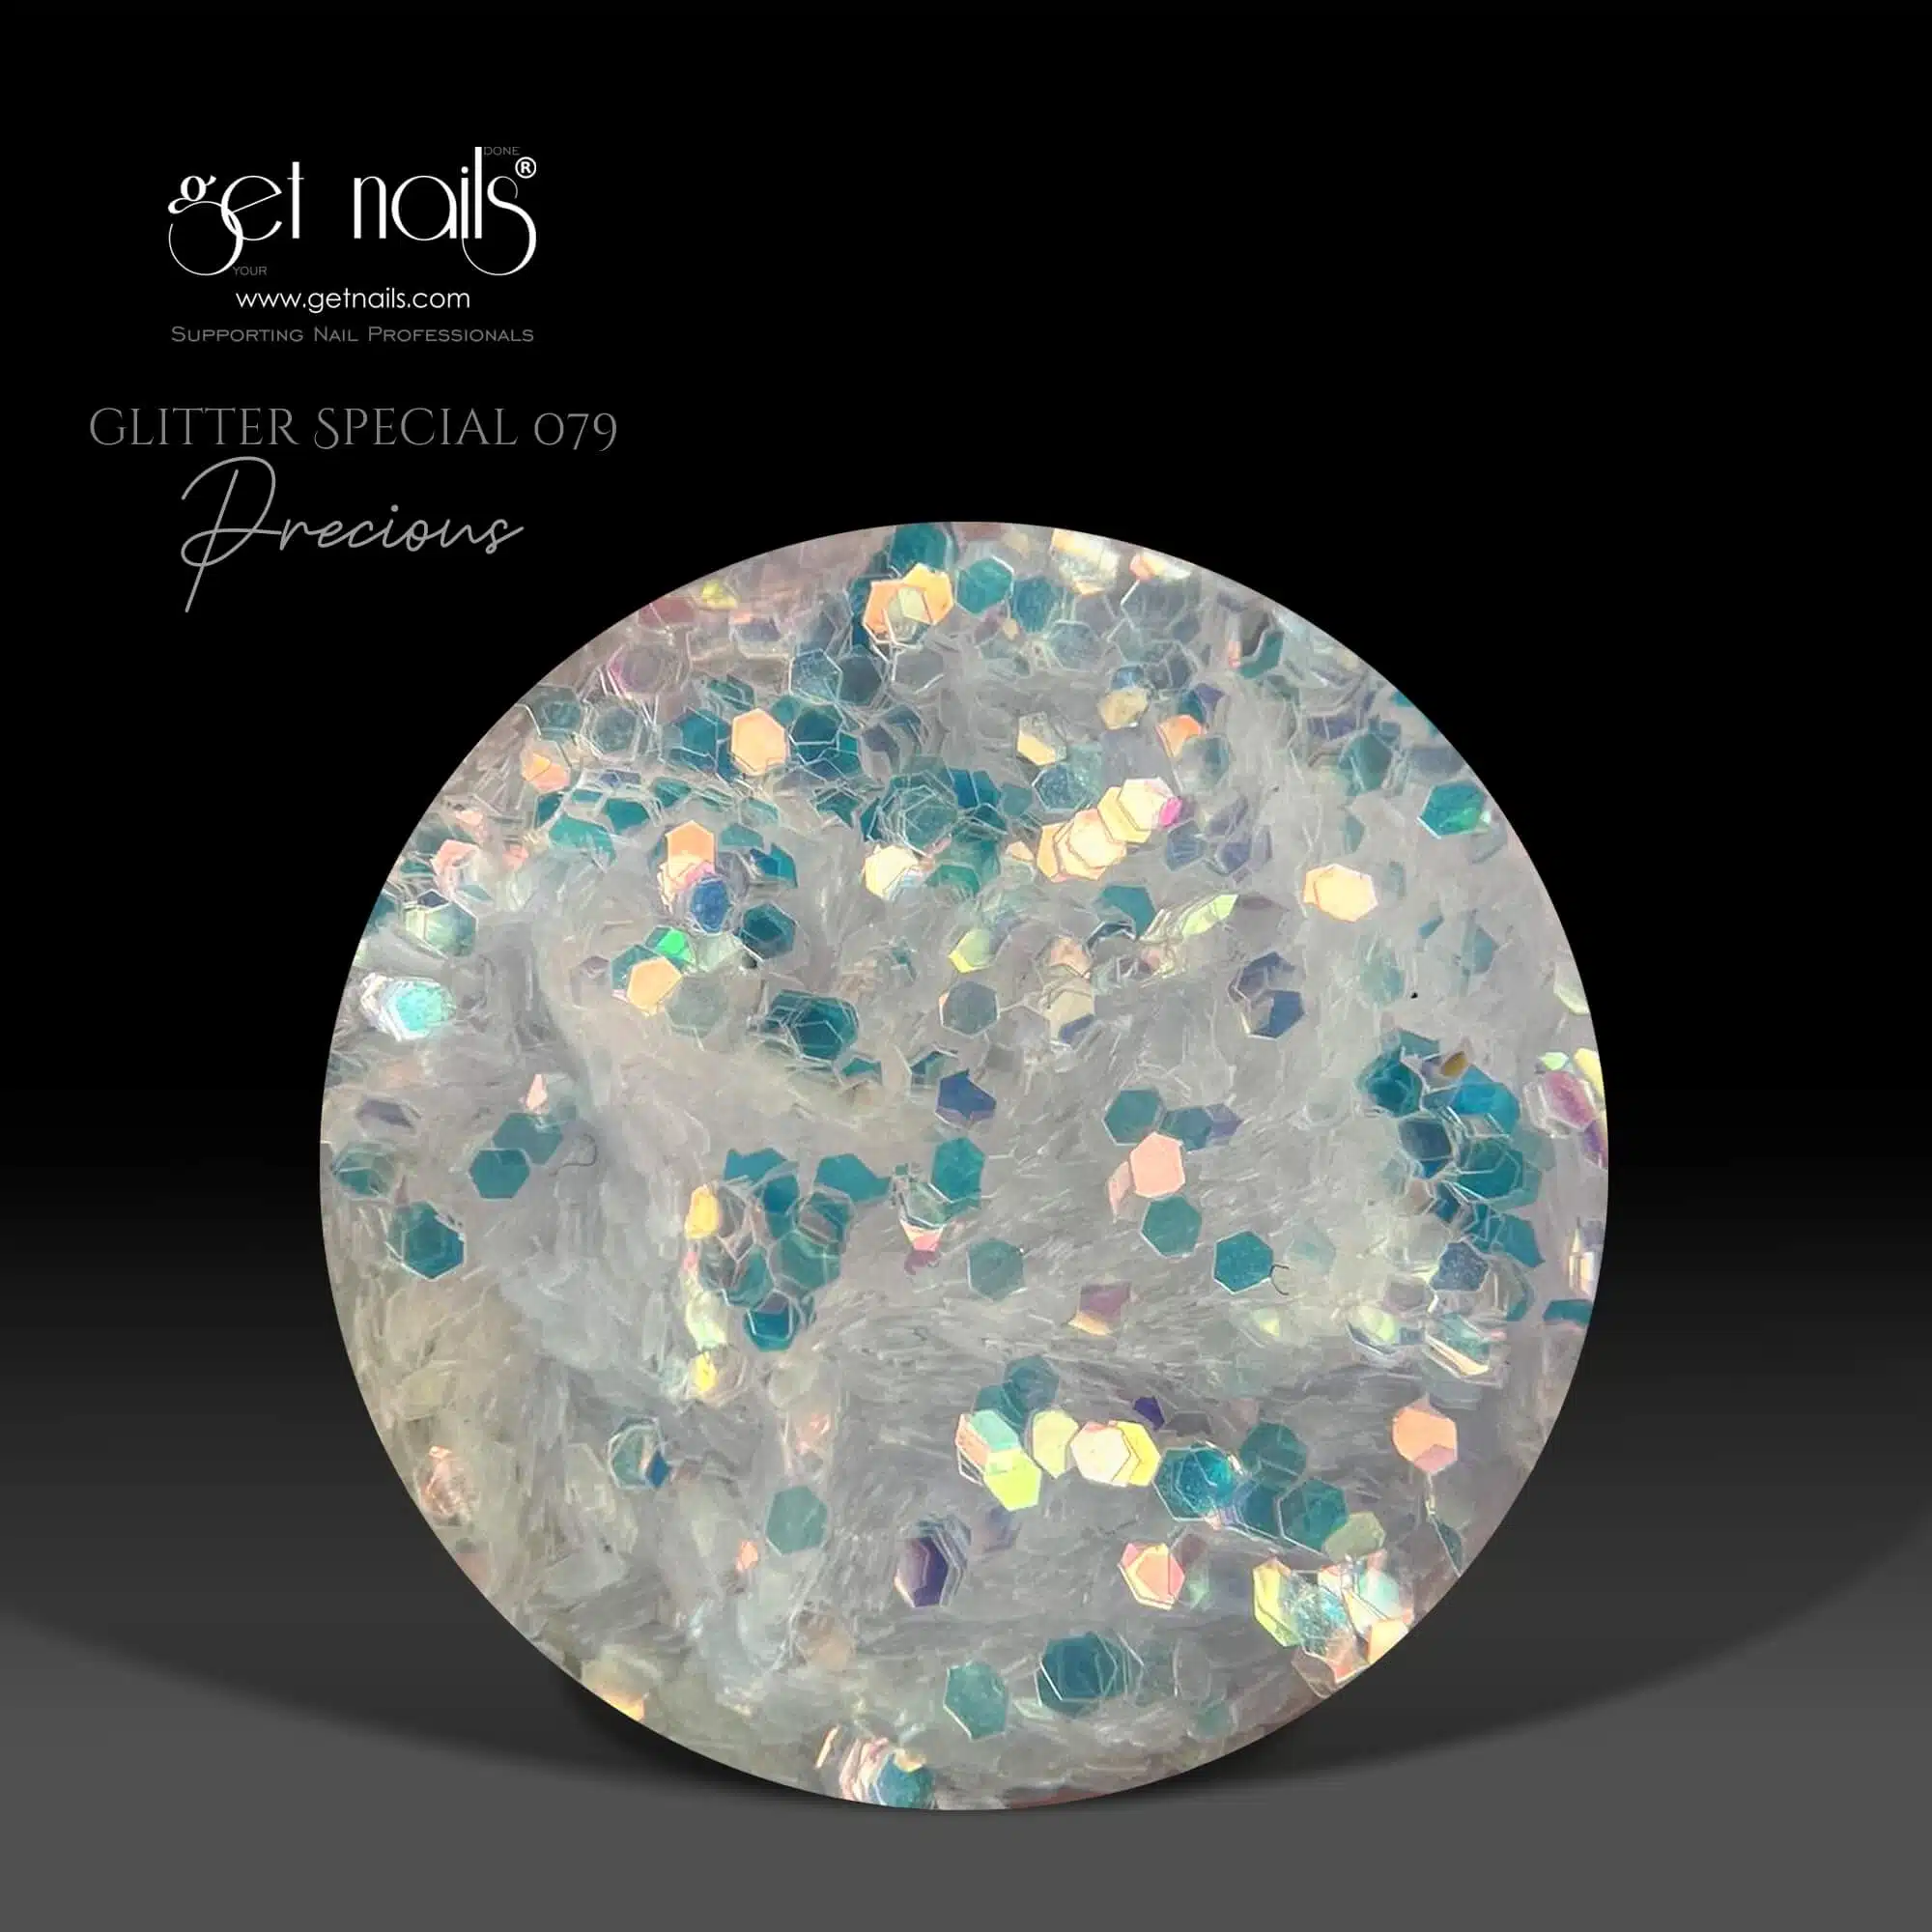 Get Nails Austria - Glitter Special 079 Precious